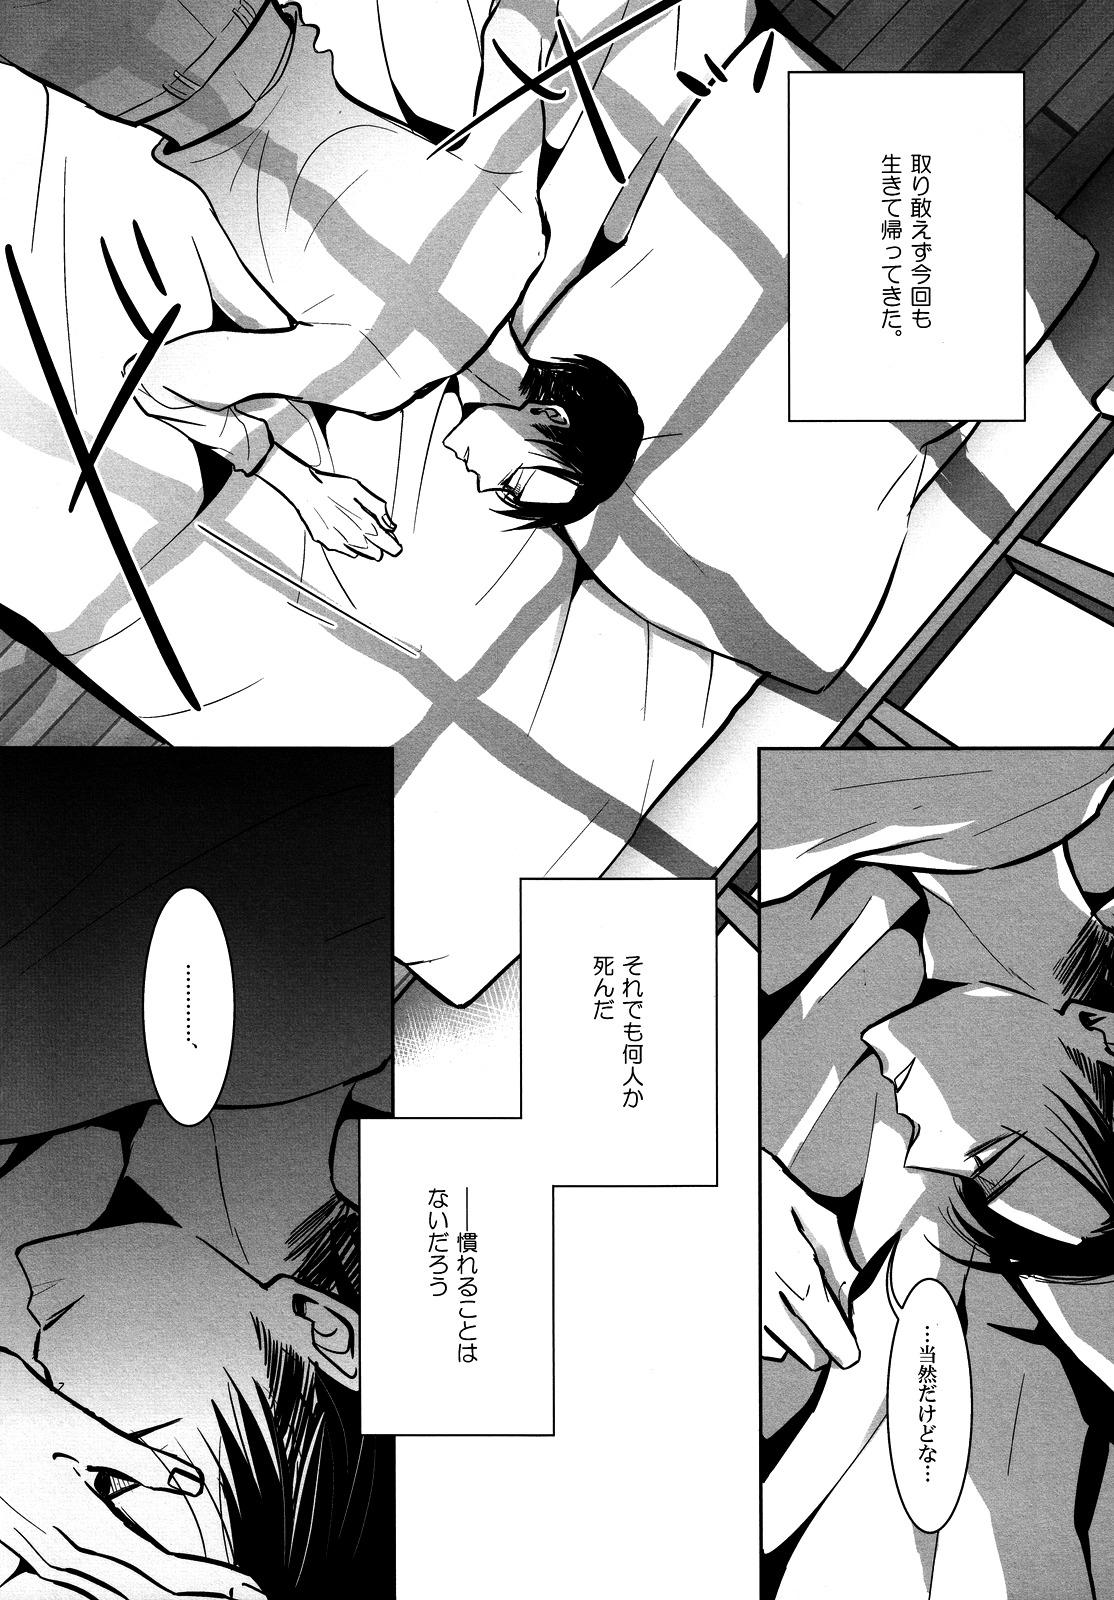 Behind Umi o mi ni ikou. - Shingeki no kyojin Cdmx - Page 6